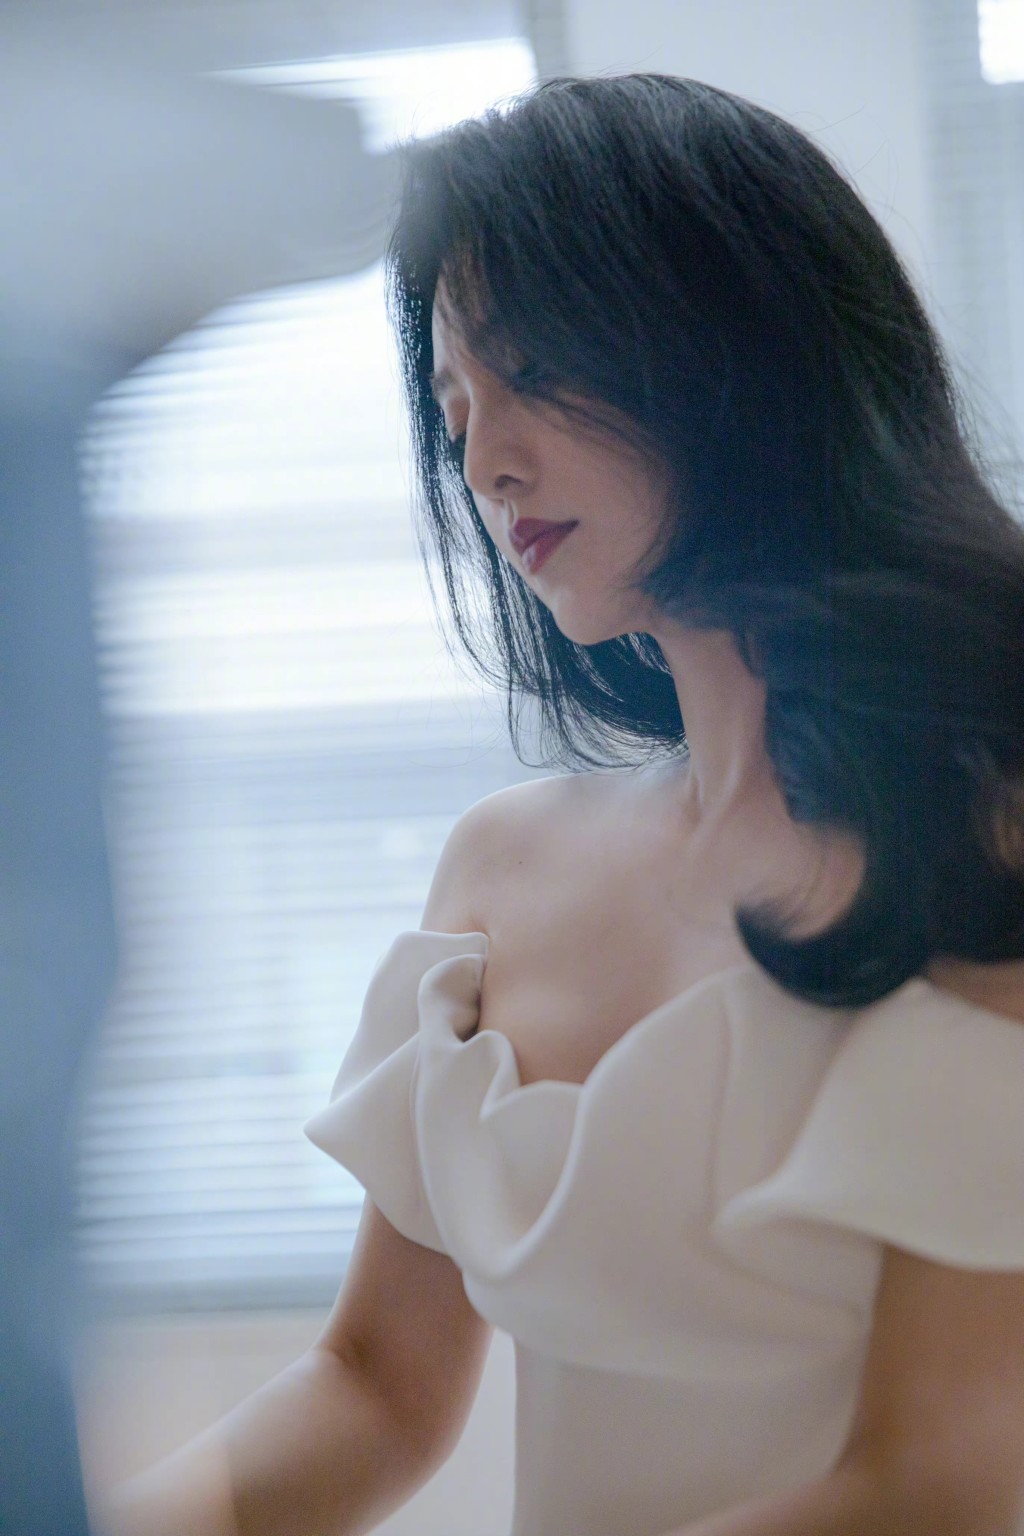 范冰冰10月在韓國釜山國際電影節獲獎，她雖然未有親身到場領獎，但預先拍下致謝詞，她言談間透露「明年見」。